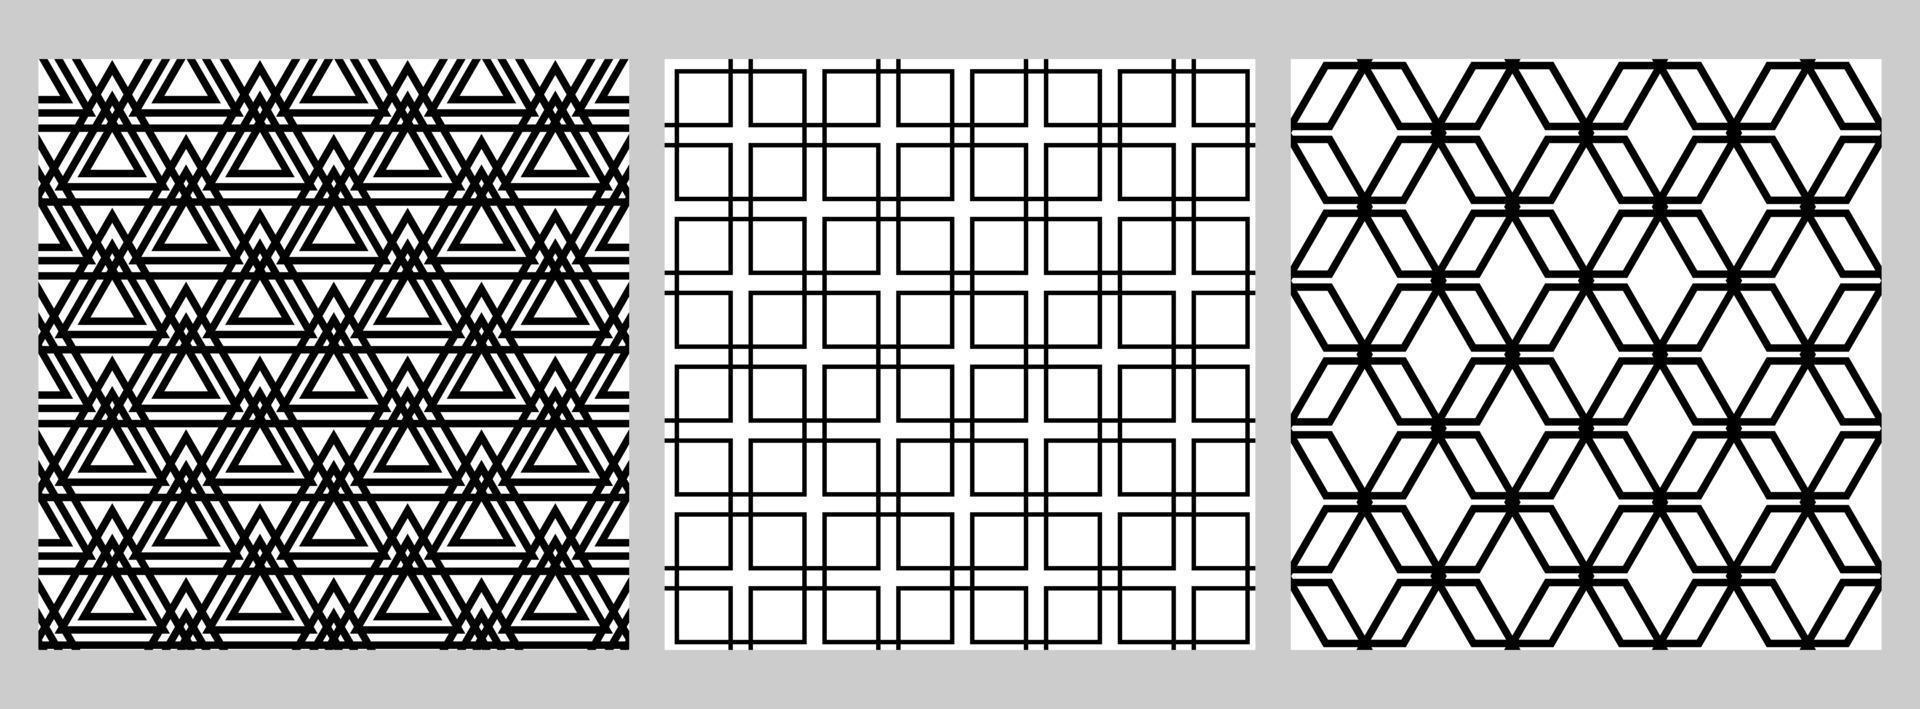 Reihe von geometrischen nahtlosen Mustern mit Figuren, die in einem Gitter angeordnet sind. schwarze Formen auf weißem Hintergrund. Quadrat, Raute, Dreieck. vektor